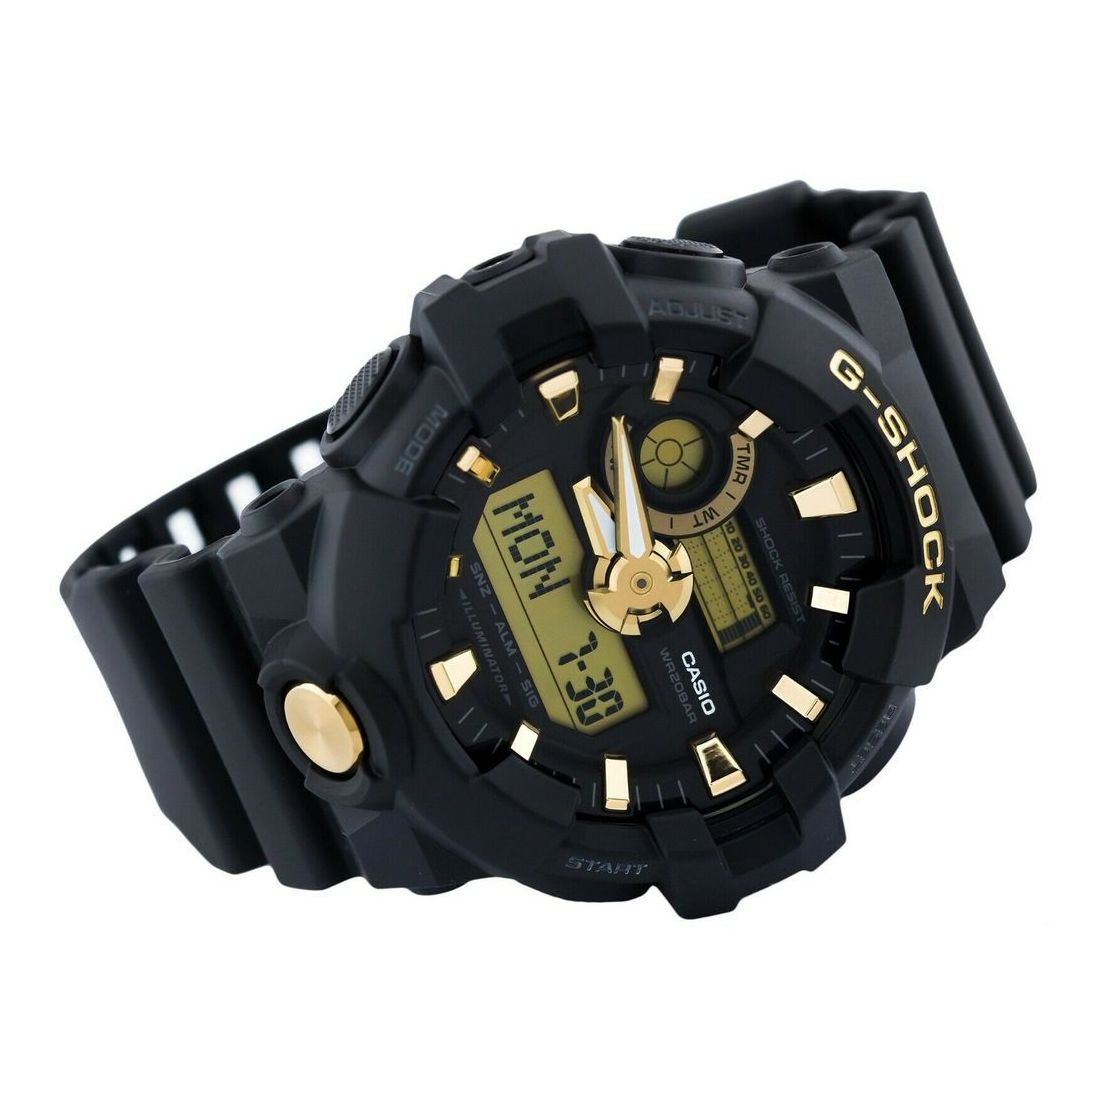 Casio G-Shock GA-710B-1A9DR Analog/Digital Watch